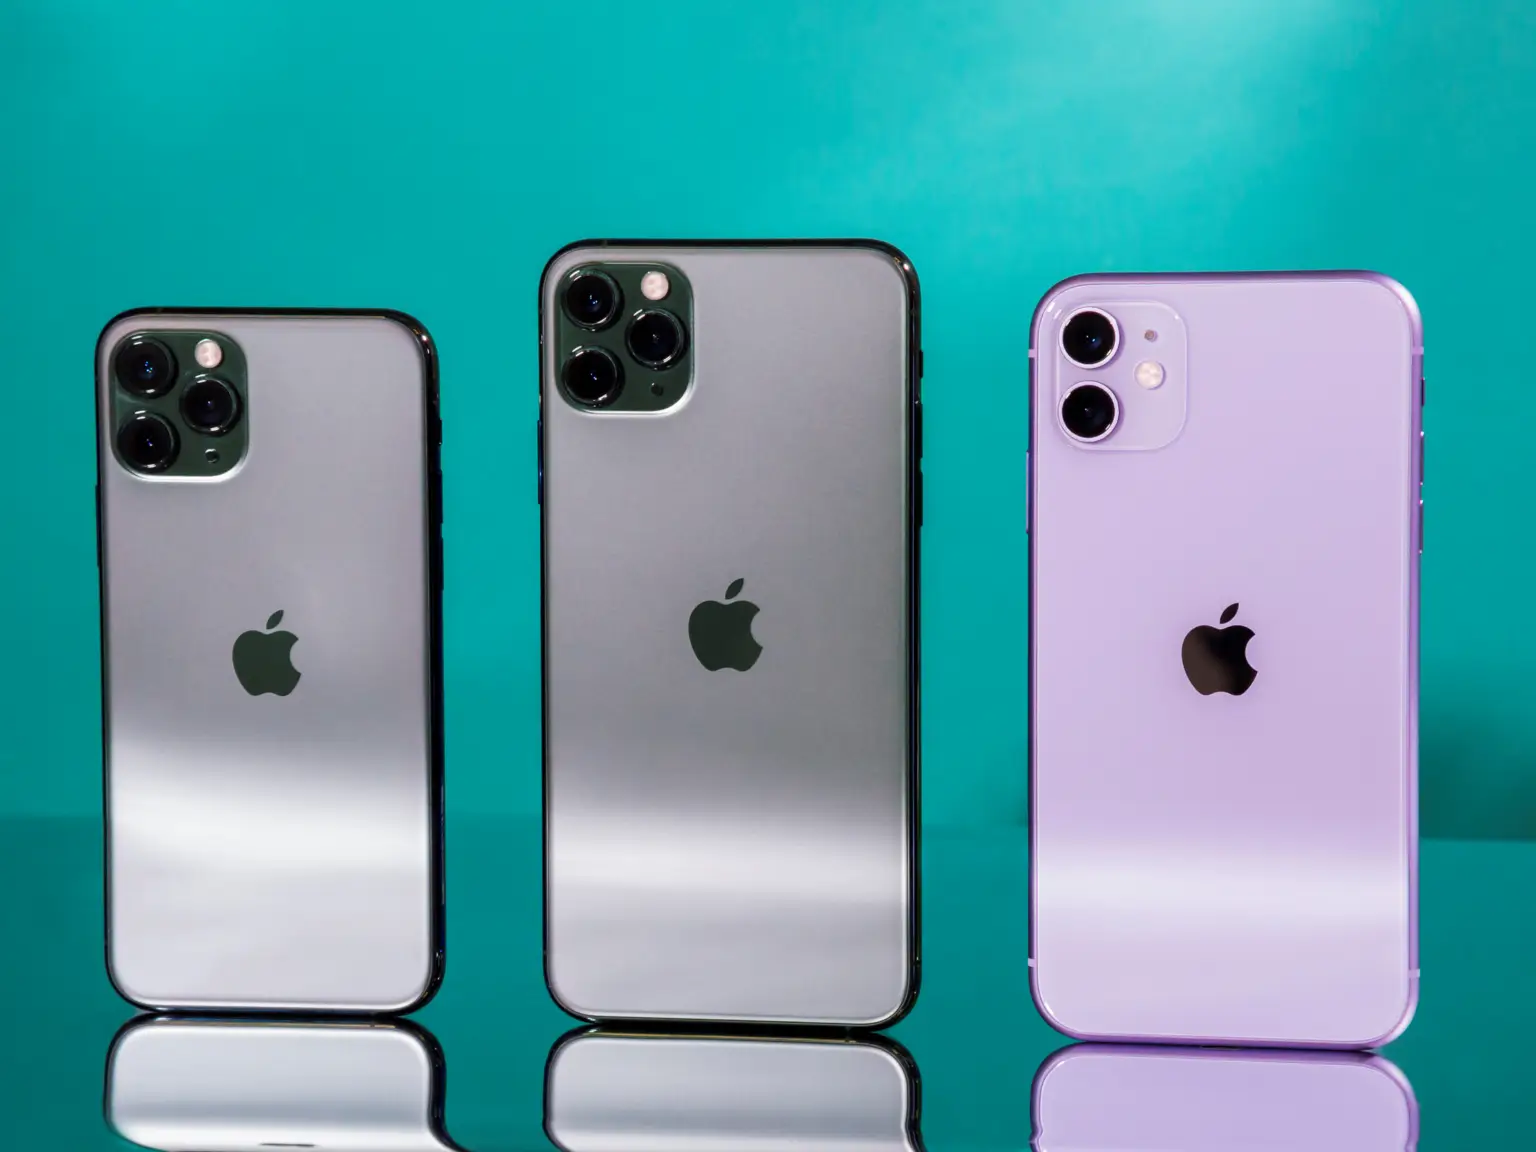  iPhone 12 سيأتي بأربعة طرازات وفقًا لتسريبات جديدة  5ddebc62fd9db21dfd3732f6-1536x1152.png